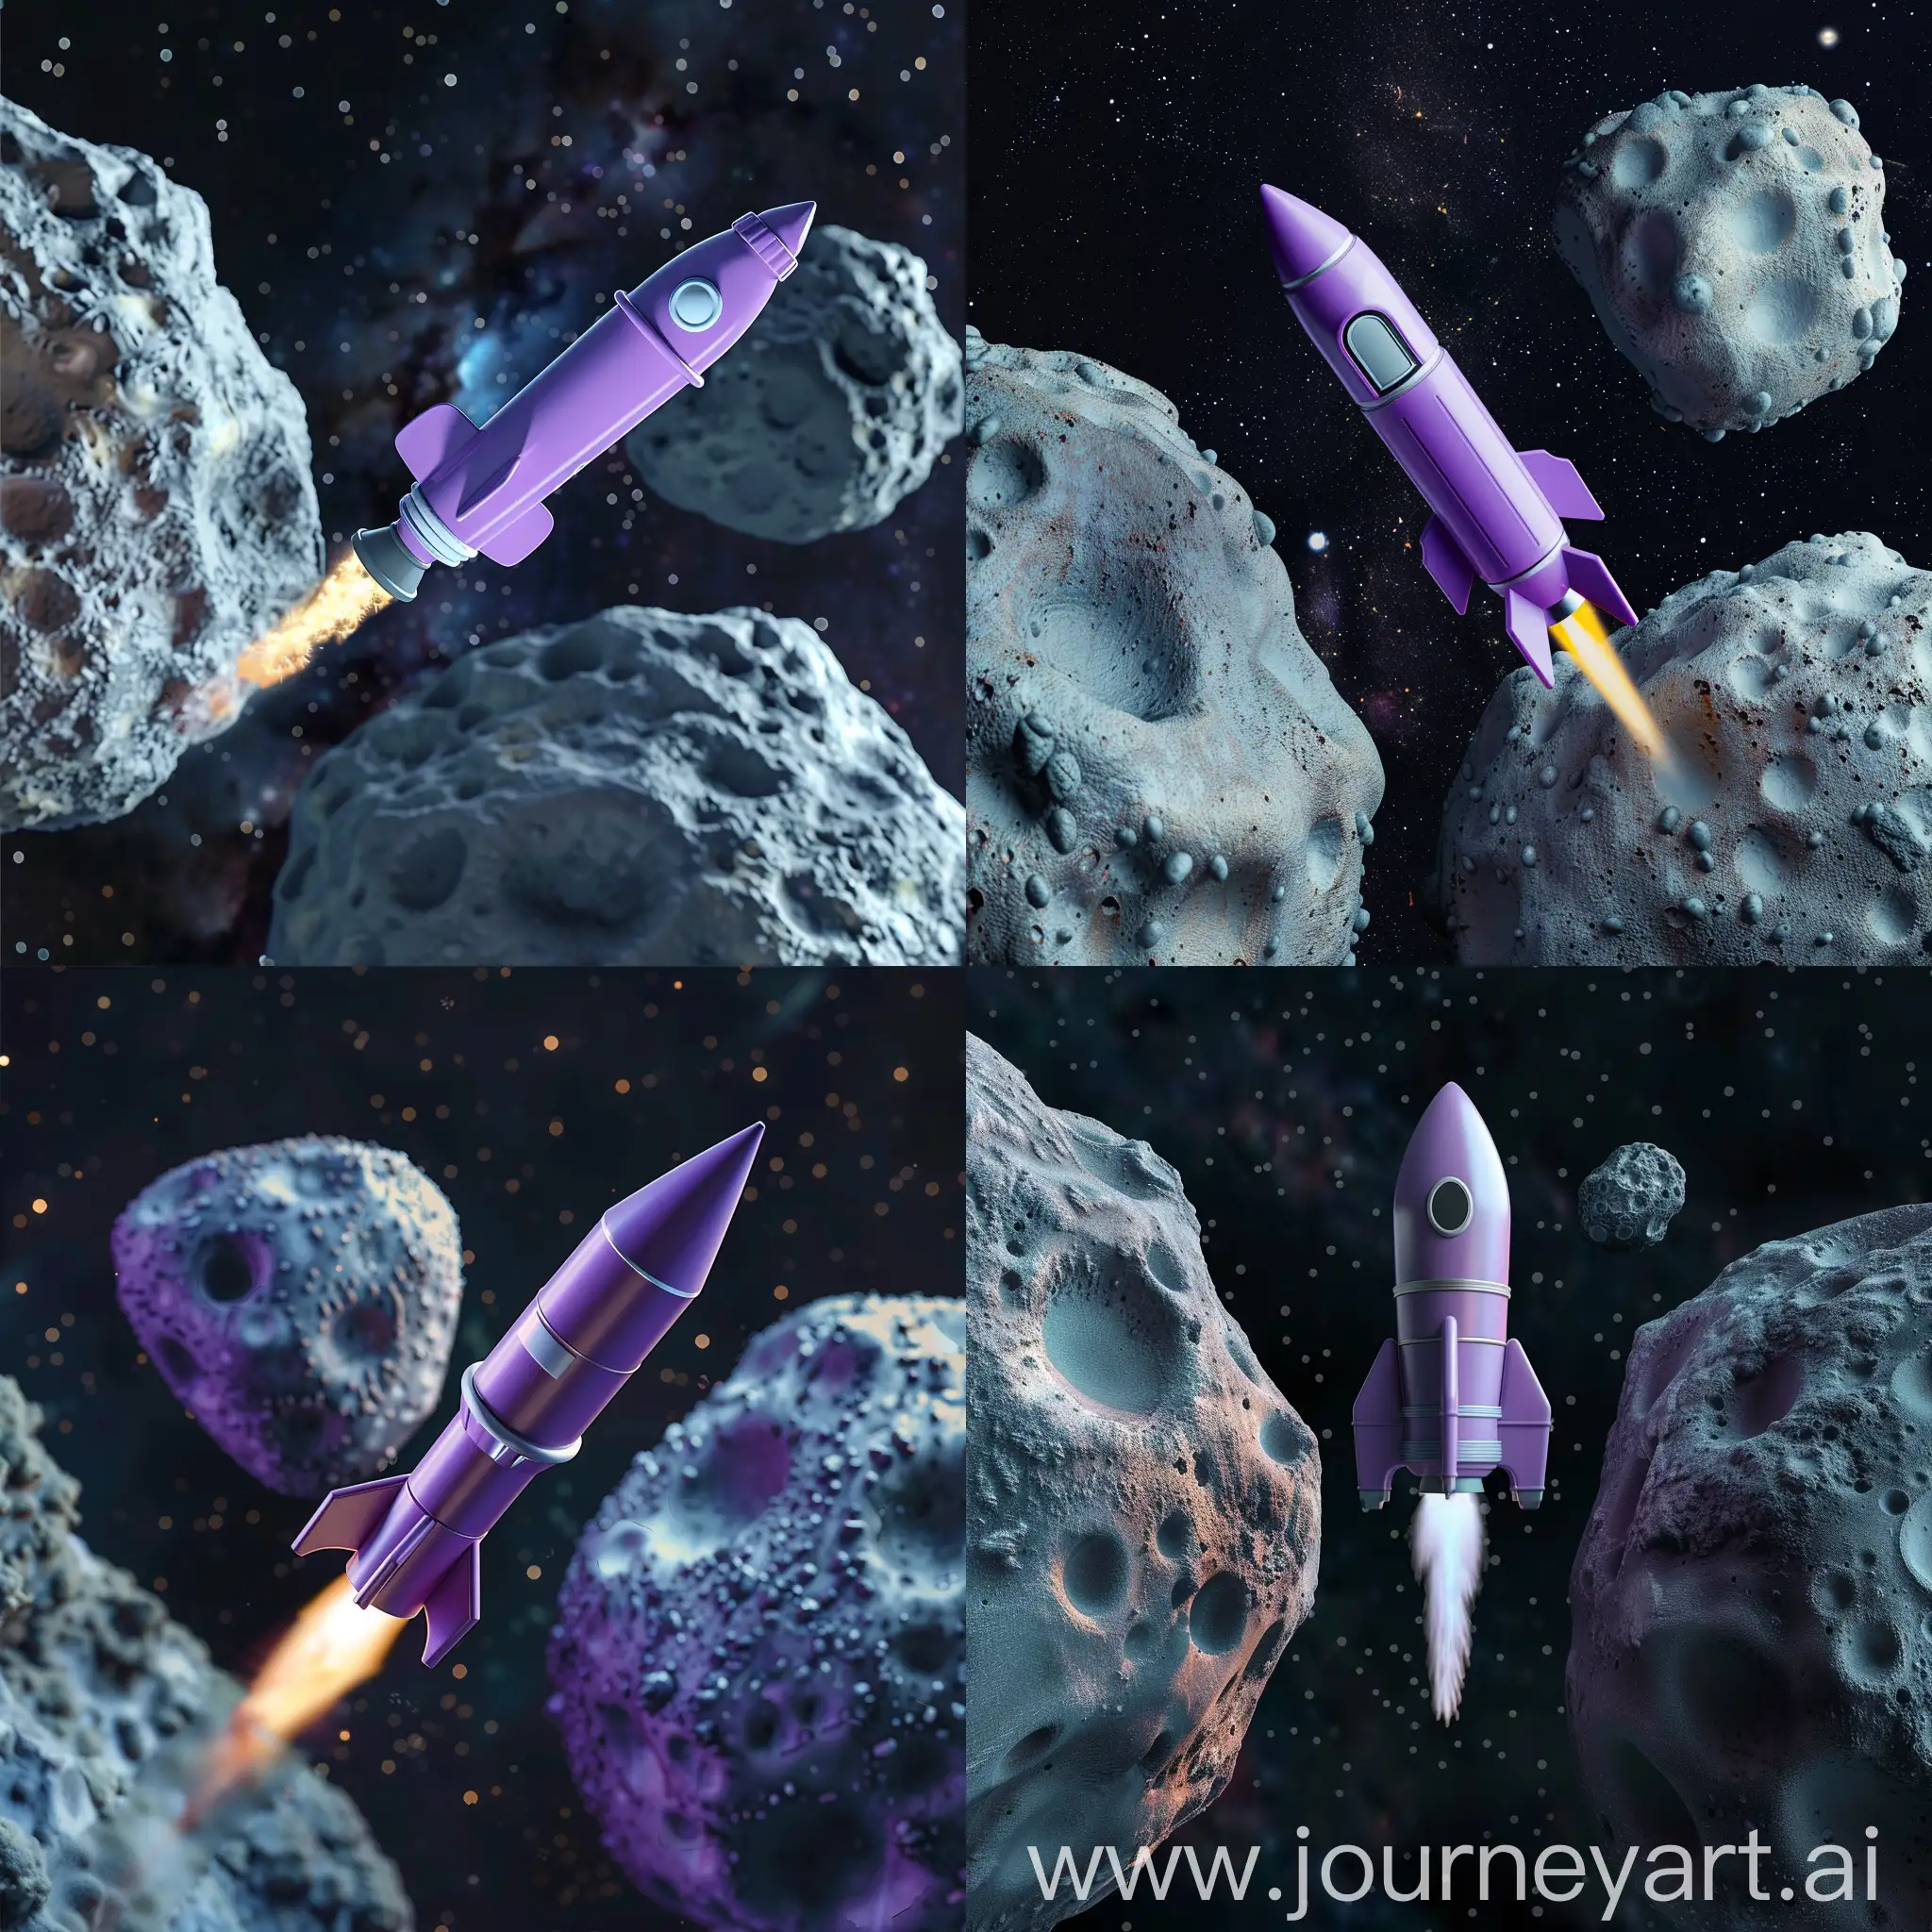 Игрушечная фиолетовая ракета летит на полной мощности в космосе между двух огромных астероидов